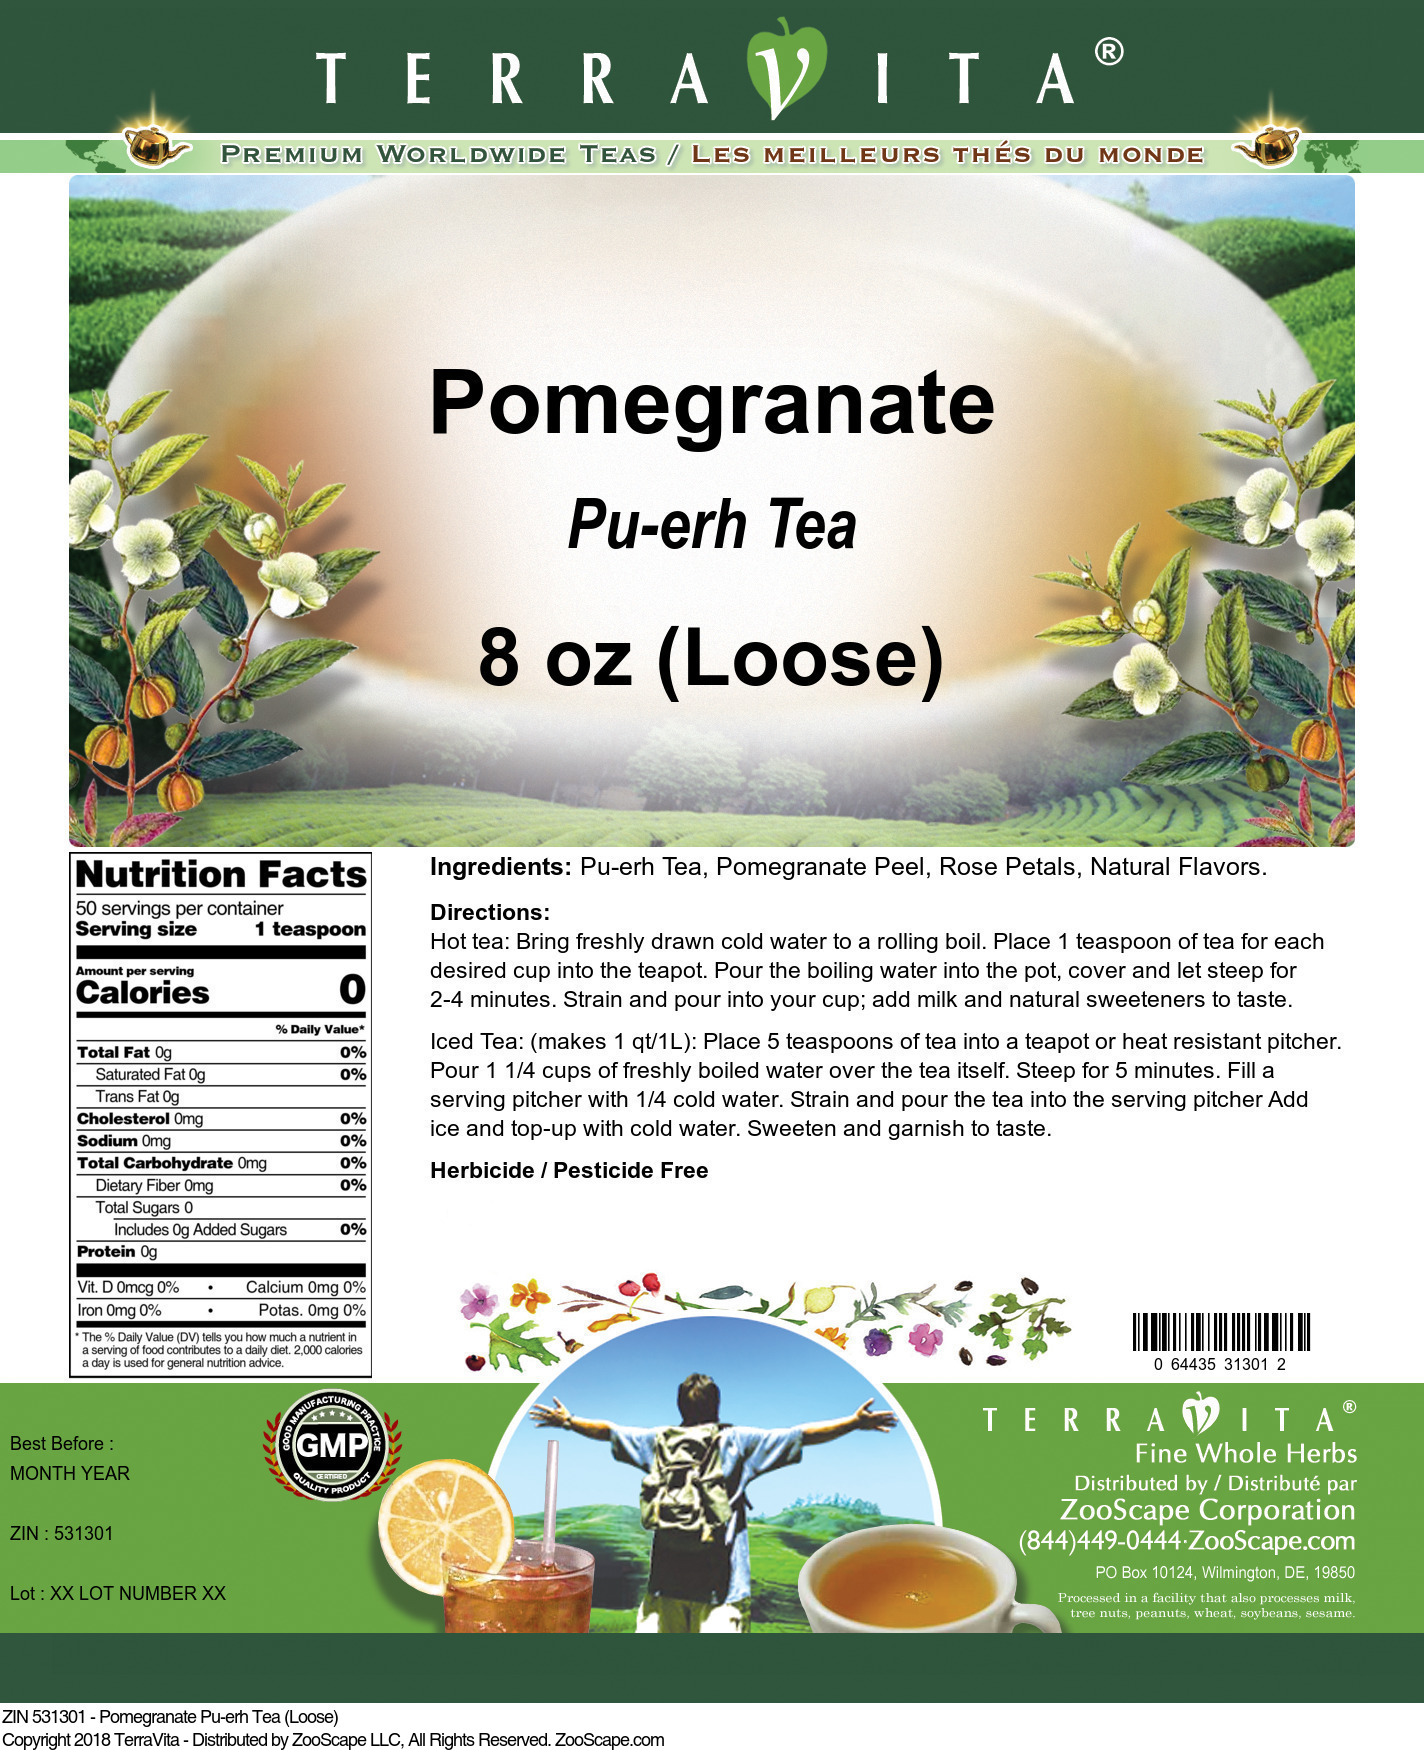 Pomegranate Pu-erh Tea (Loose) - Label